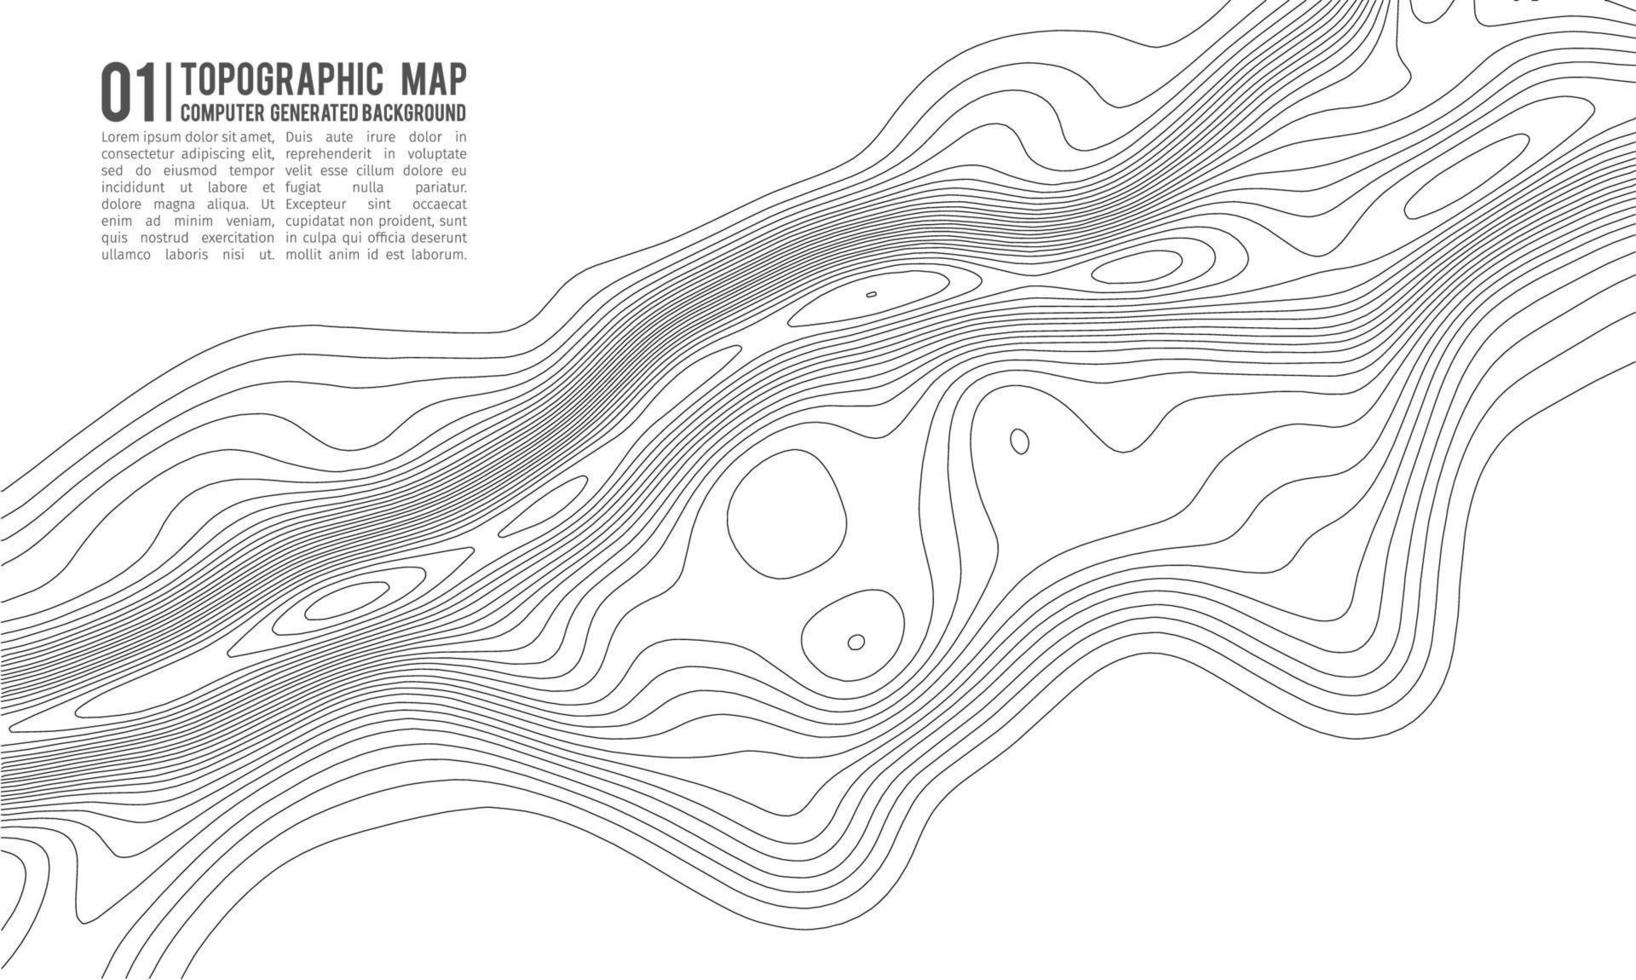 fond de contour de carte topographique. carte topographique avec élévation. vecteur de carte de contour. illustration vectorielle abstraite de grille de carte de topographie du monde géographique.